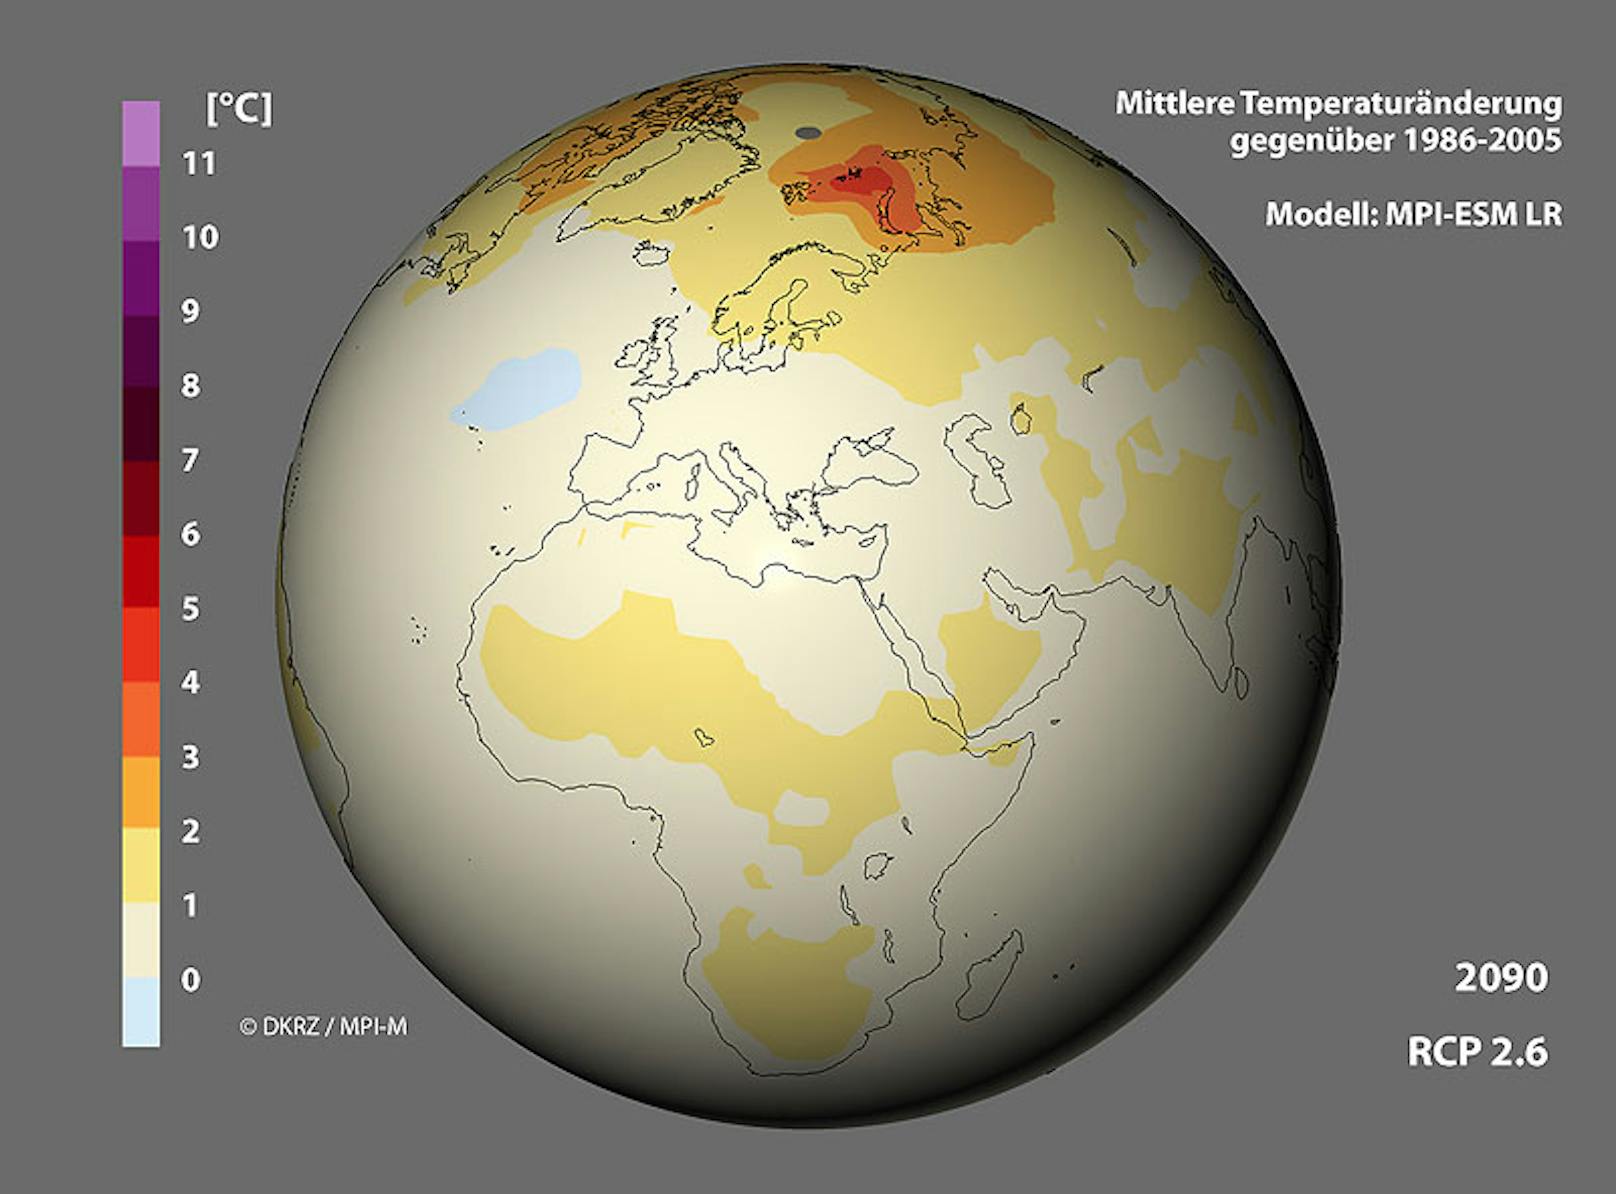 Änderung der geographischen Verteilung der 2m-Temperatur bis 2100 nach dem RCP-Szenarien 2.6 im Vergleich zum Mittel 1986-2005.